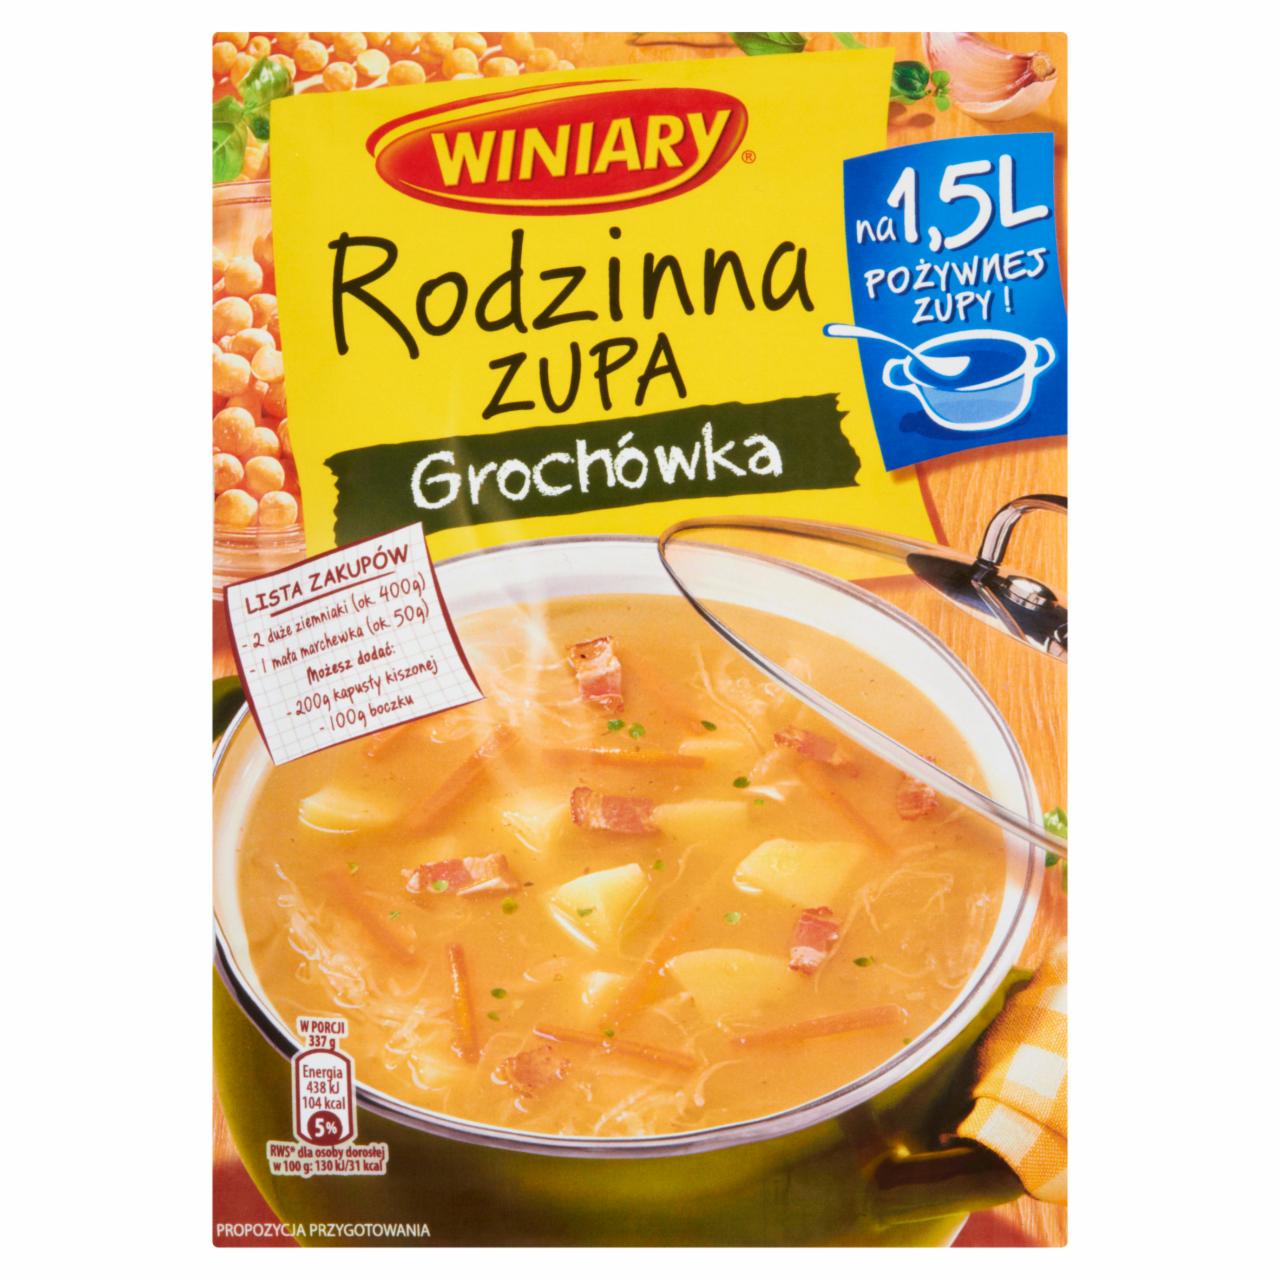 Zdjęcia - Winiary Rodzinna zupa Grochówka 70 g